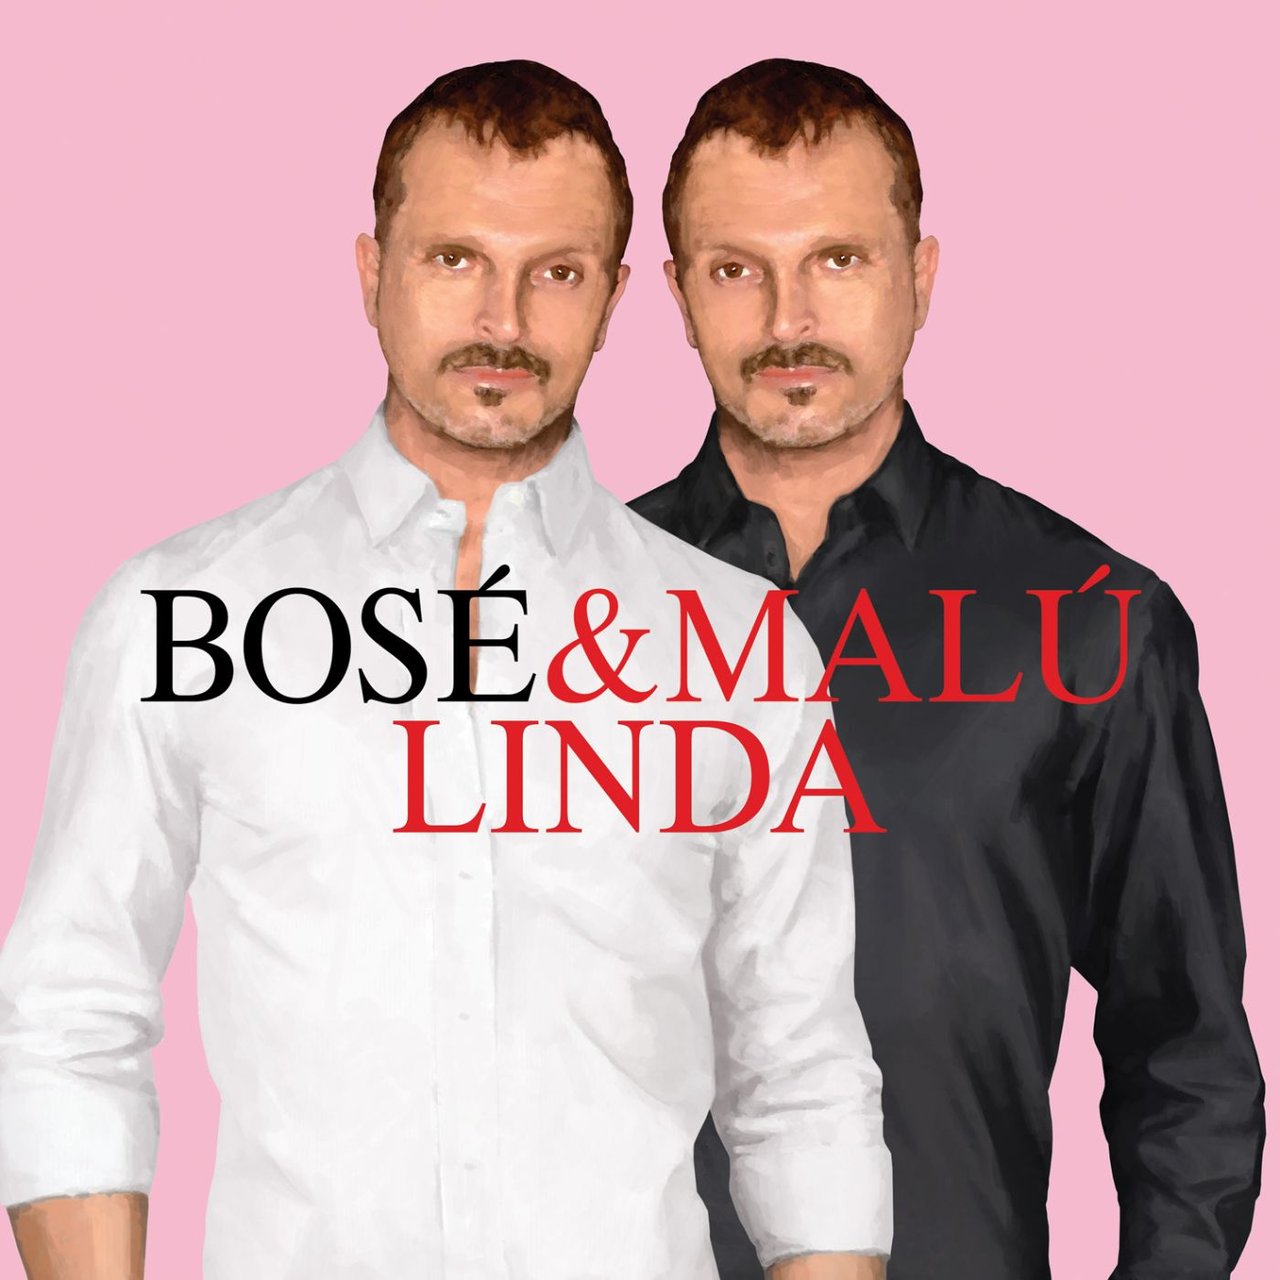 Miguel Bosé & Malú — Linda cover artwork